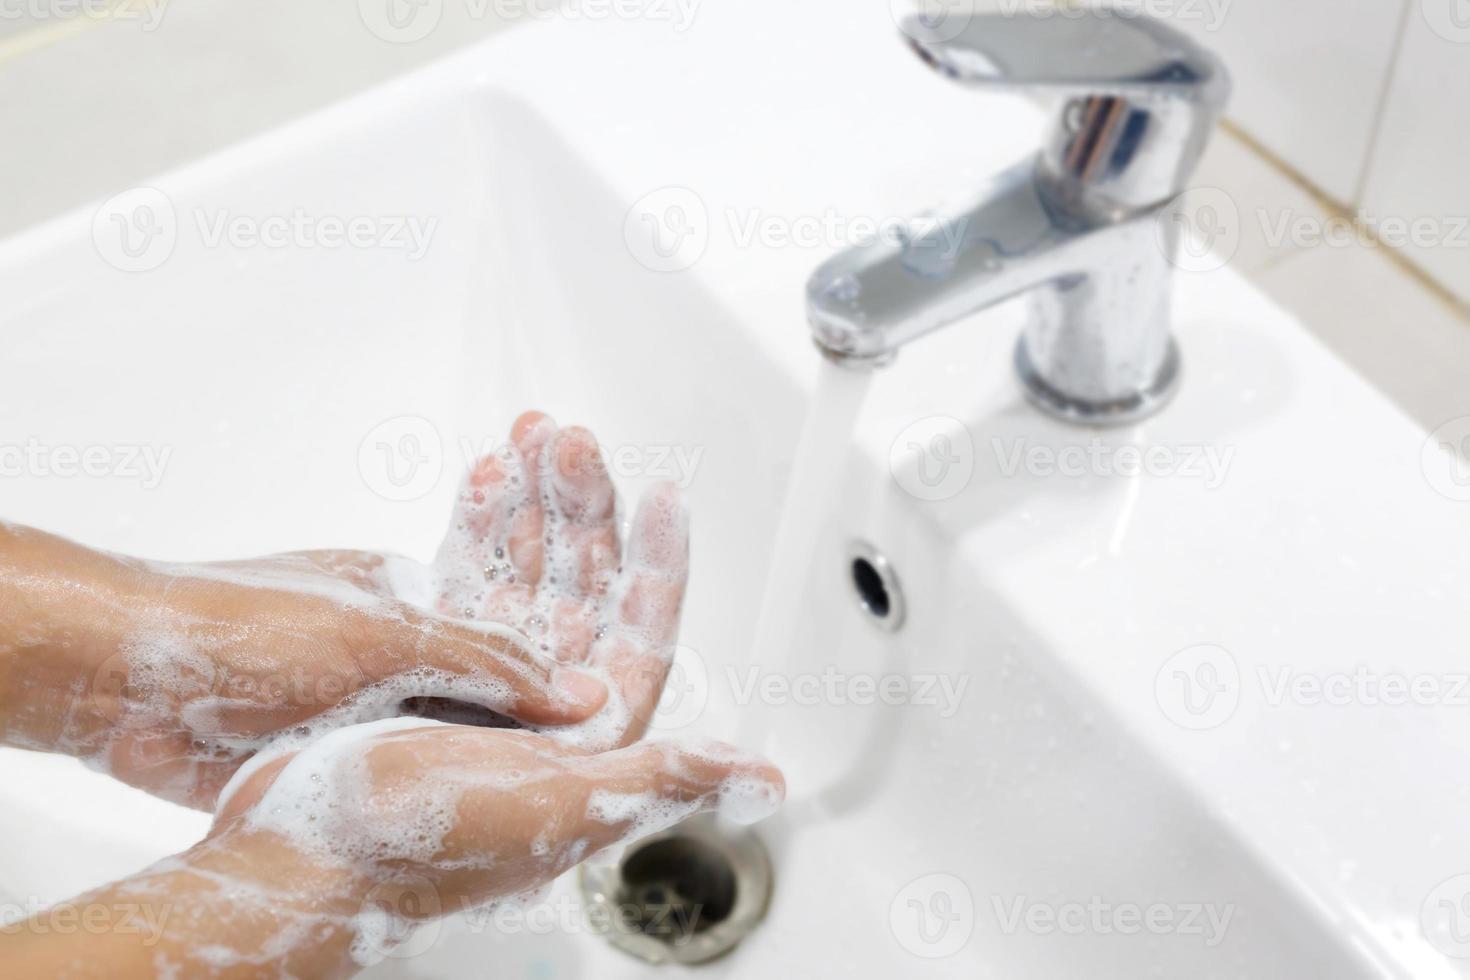 Hygiene. Hände reinigen. Händewaschen mit Seife unter dem Wasserhahn mit Wasser zahlen Schmutz. verhindern sterilisieren keim bakterien krankheit. Gesundheitskonzept. foto